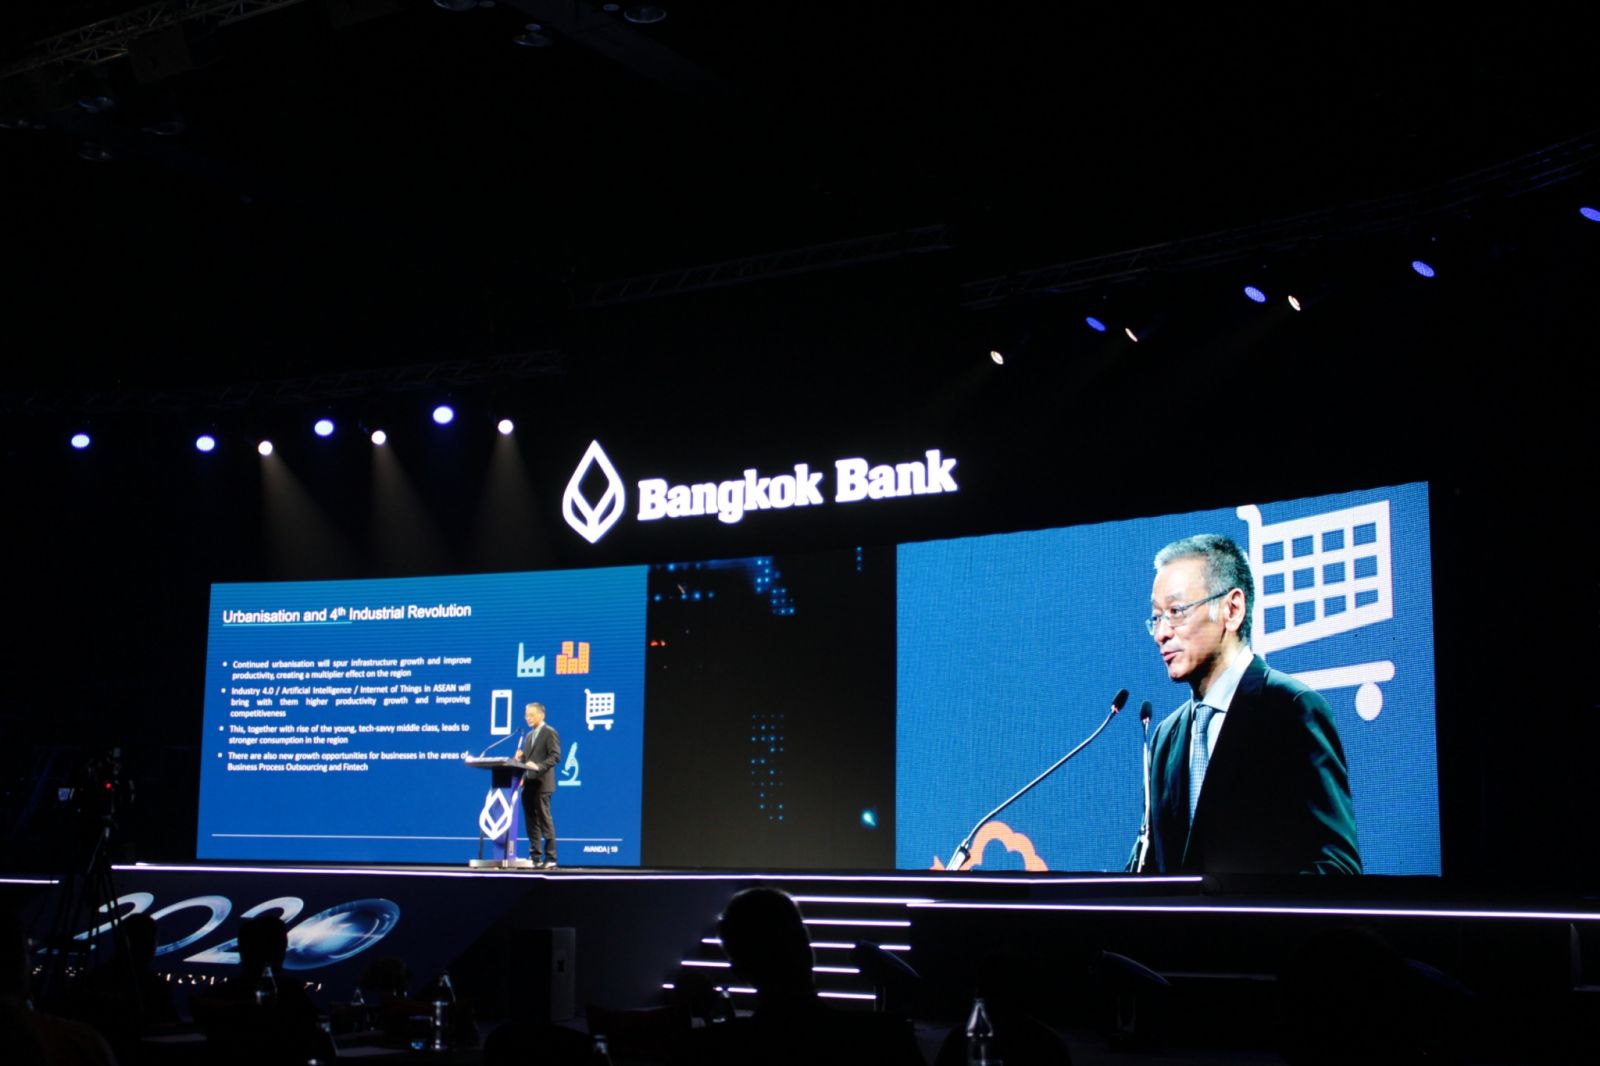 Bangkok Bank Hosts AEC Business Forum 2019